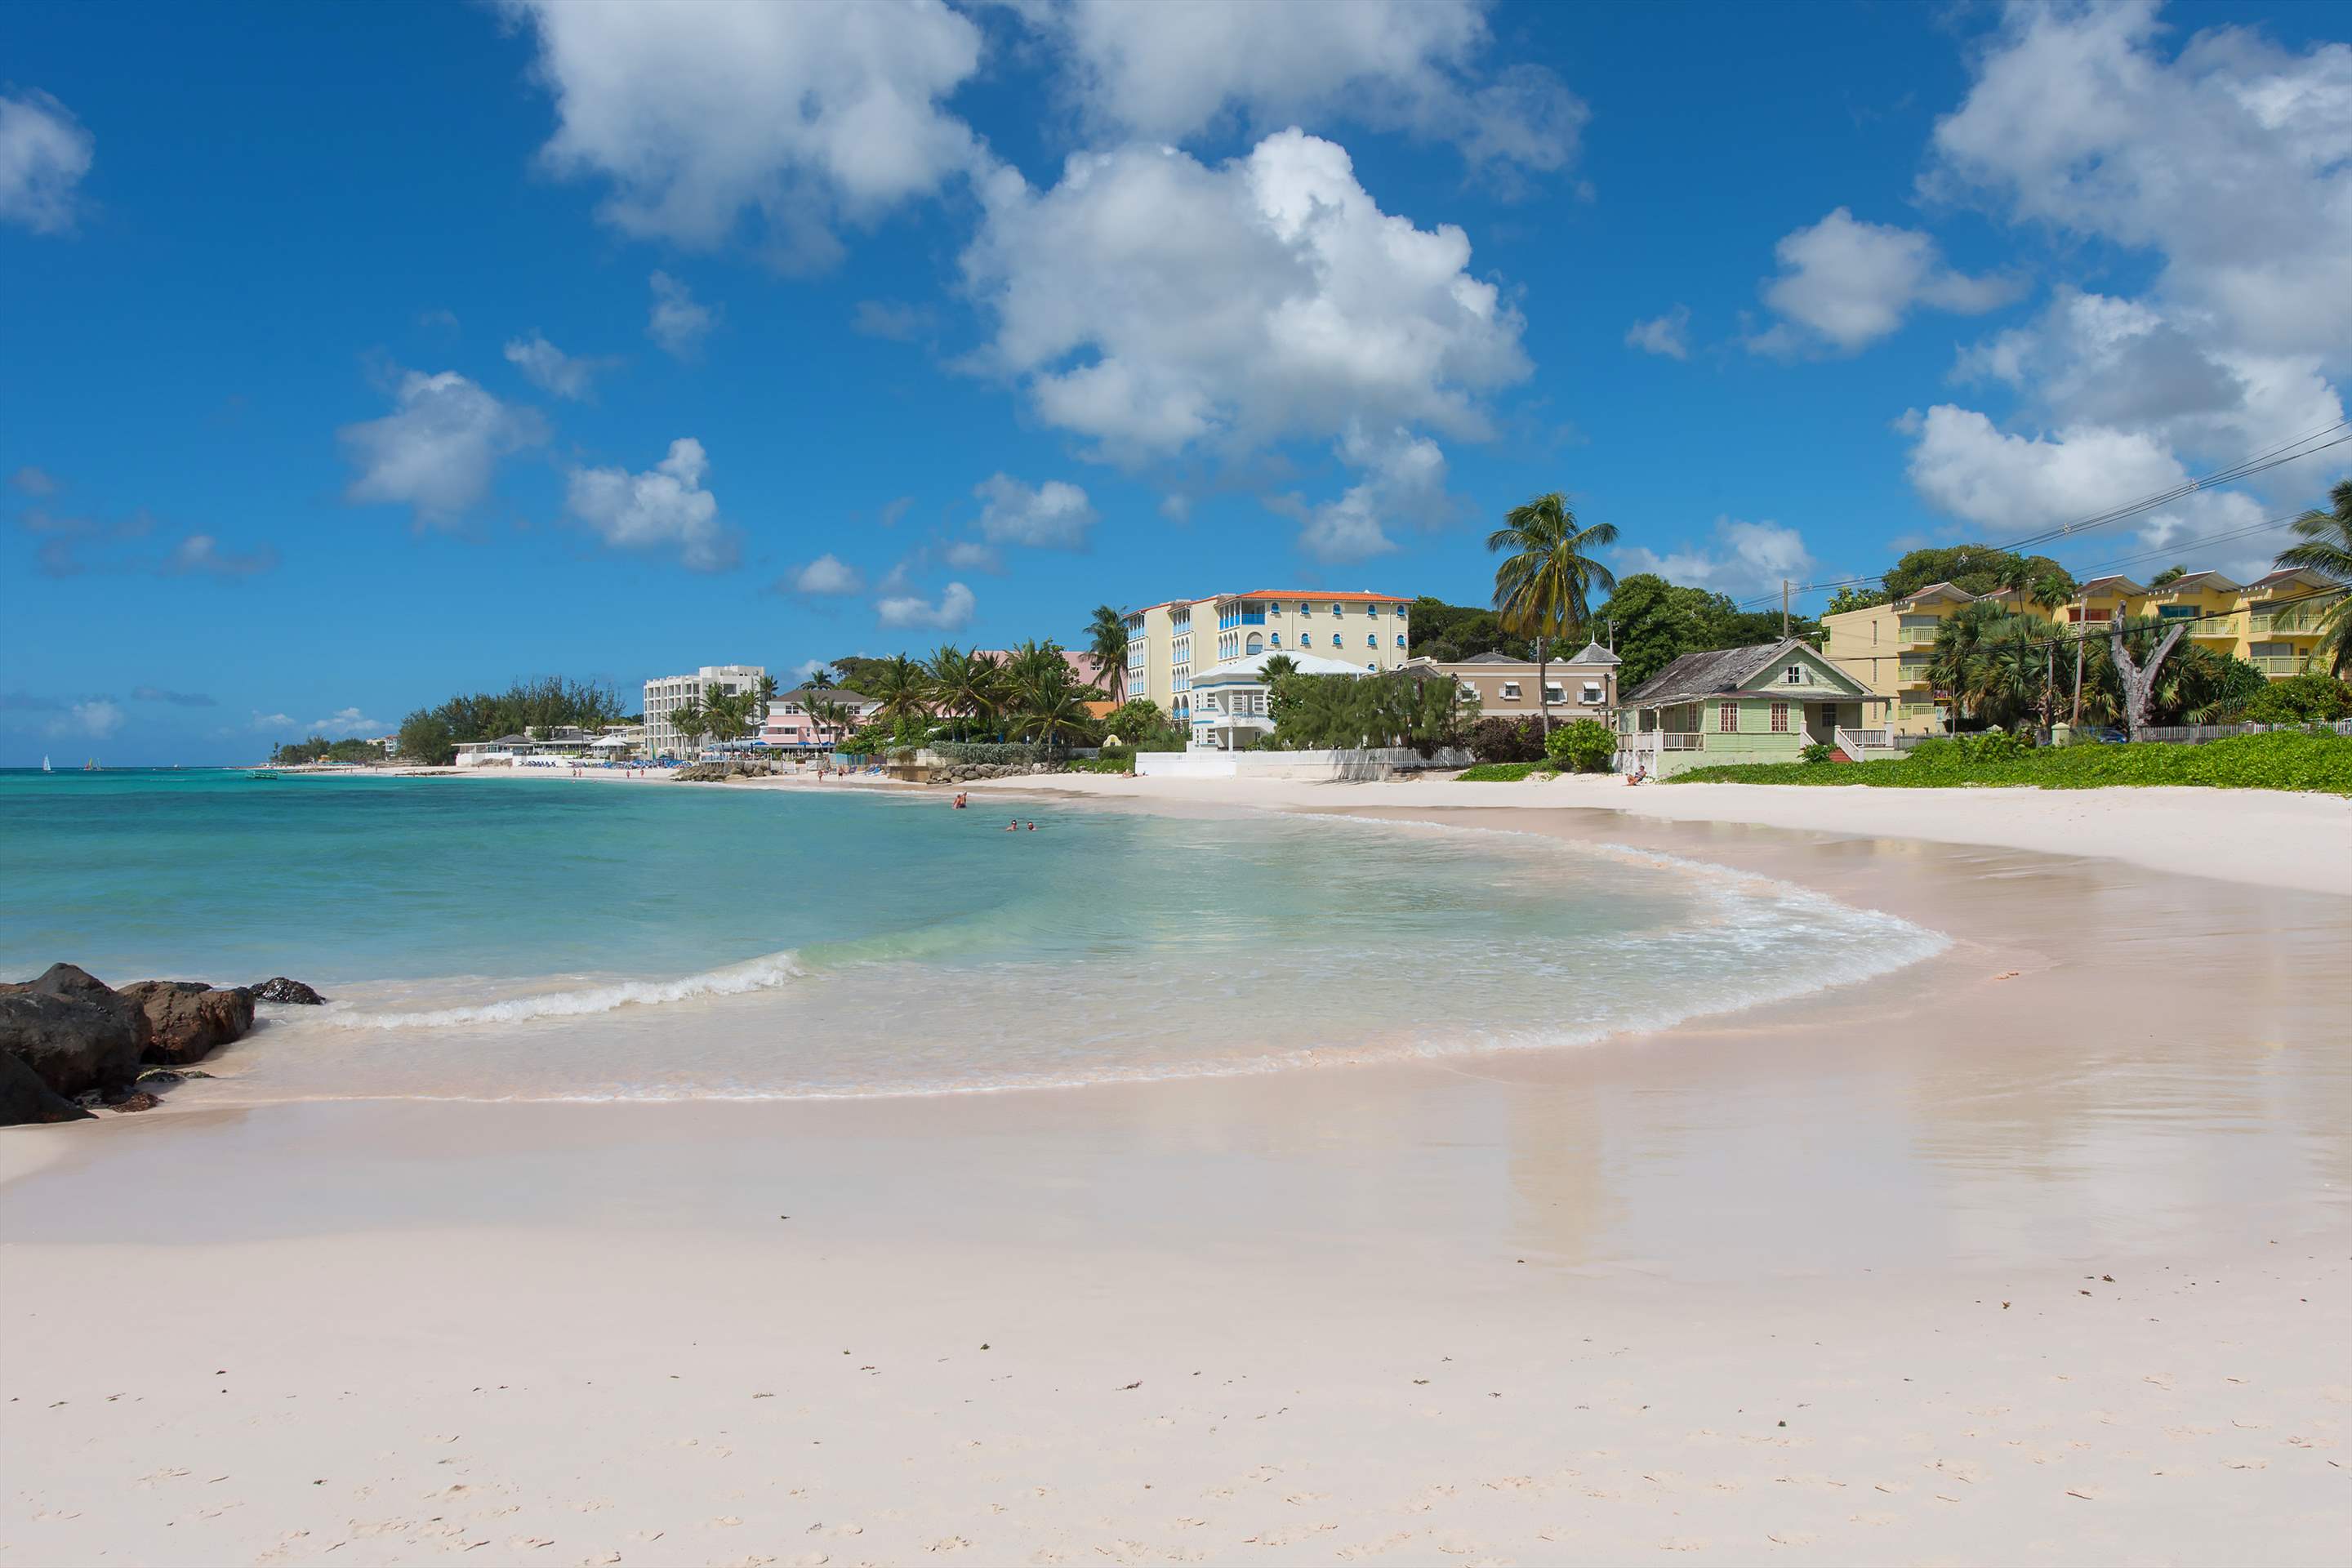 Maxwell Beach Villas 101, 2 bedroom, 2 bedroom apartment in St. Lawrence Gap & South Coast, Barbados Photo #8